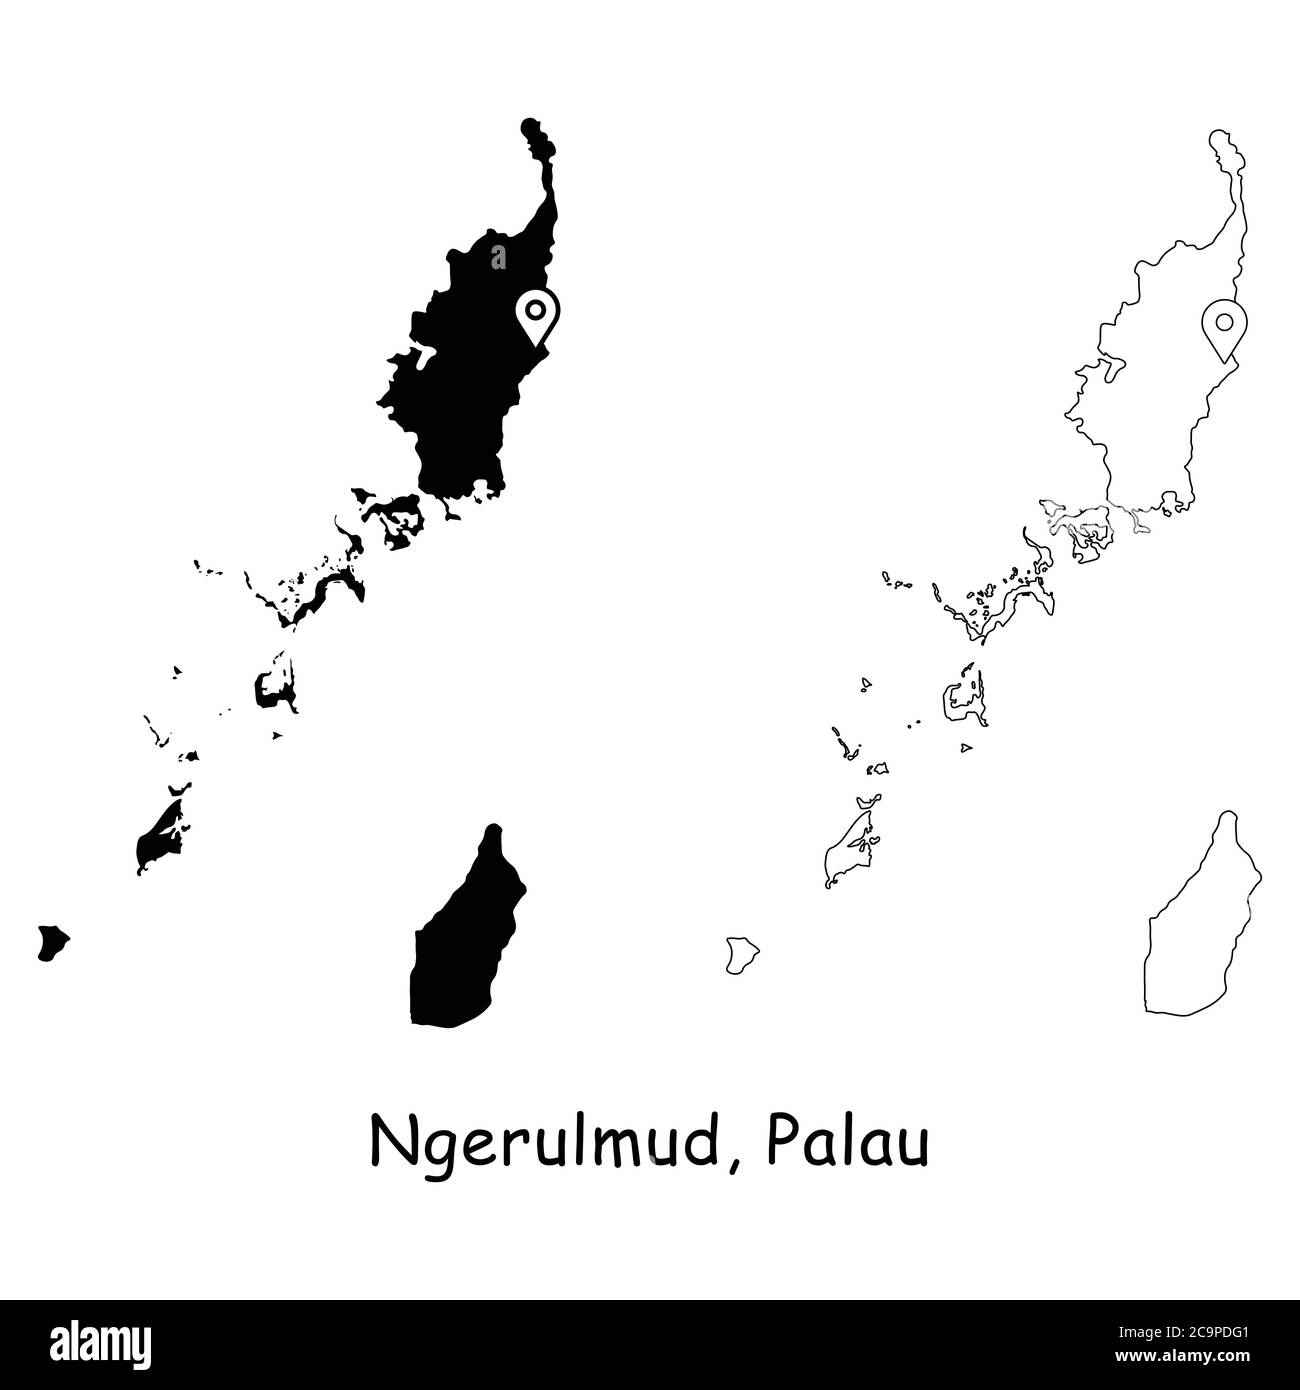 Ngerulmud, République des Palaos. Carte détaillée du pays avec broche d'emplacement sur Capital City. Cartes silhouettes et vectorielles noires isolées sur fond blanc. Illustration de Vecteur